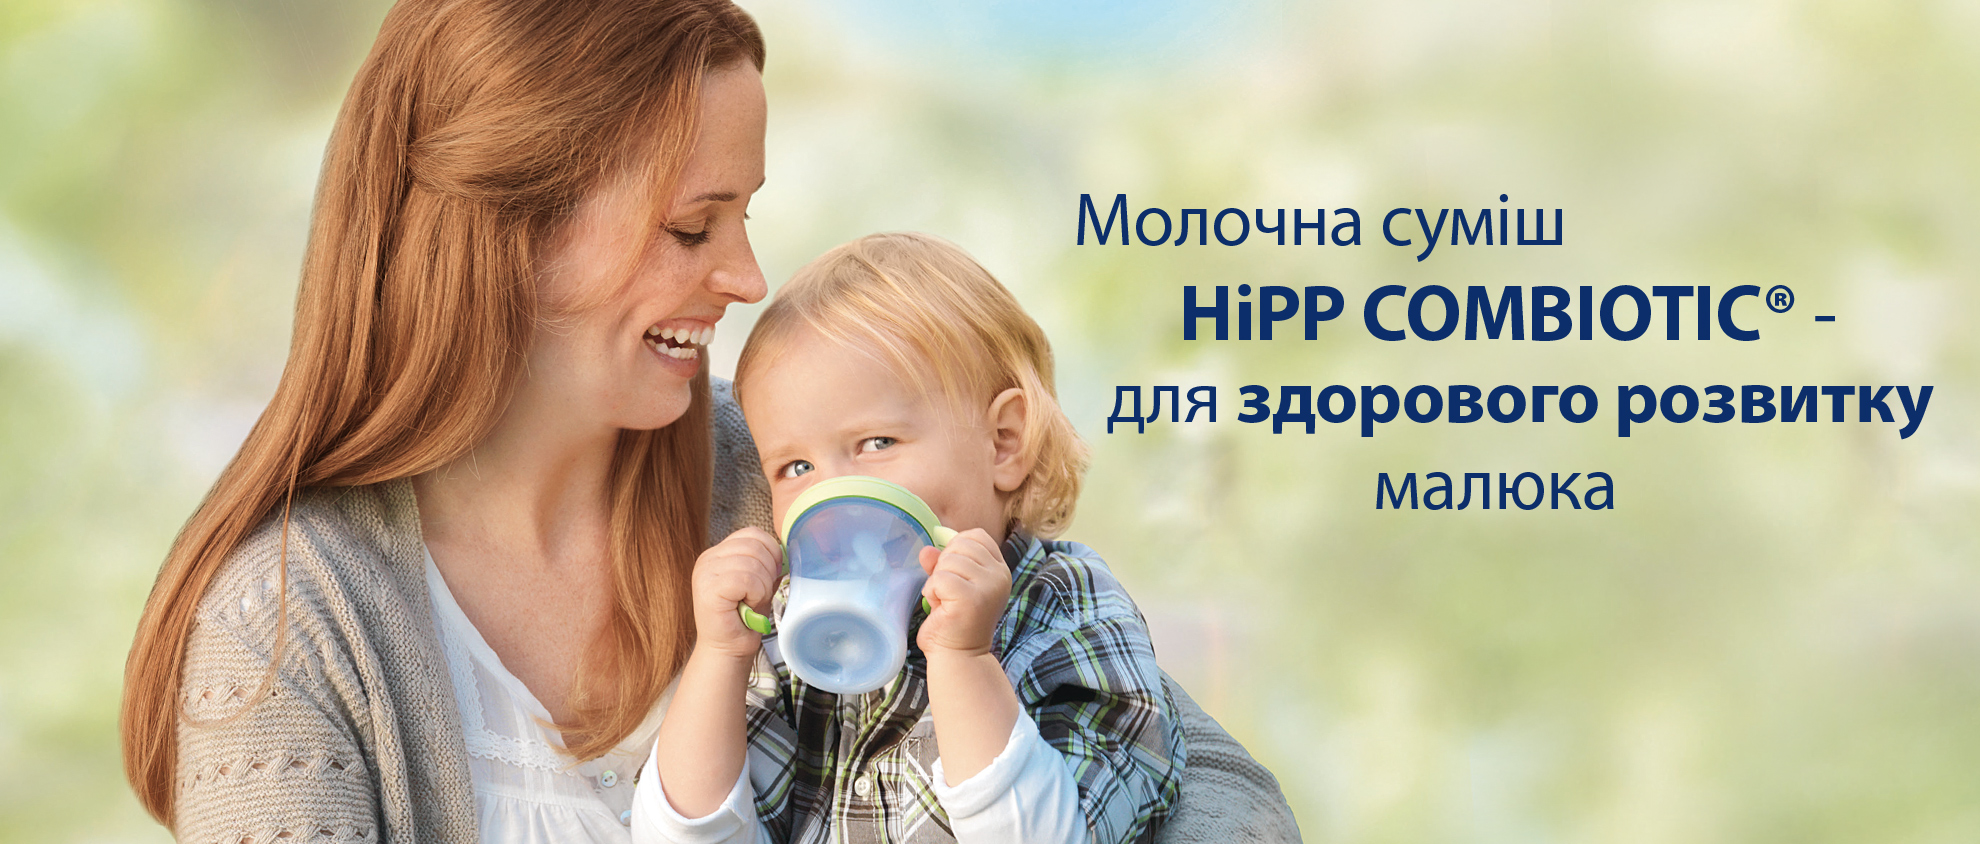 Молочні суміші  HiPP Combiotic для здорового розвитку малюка